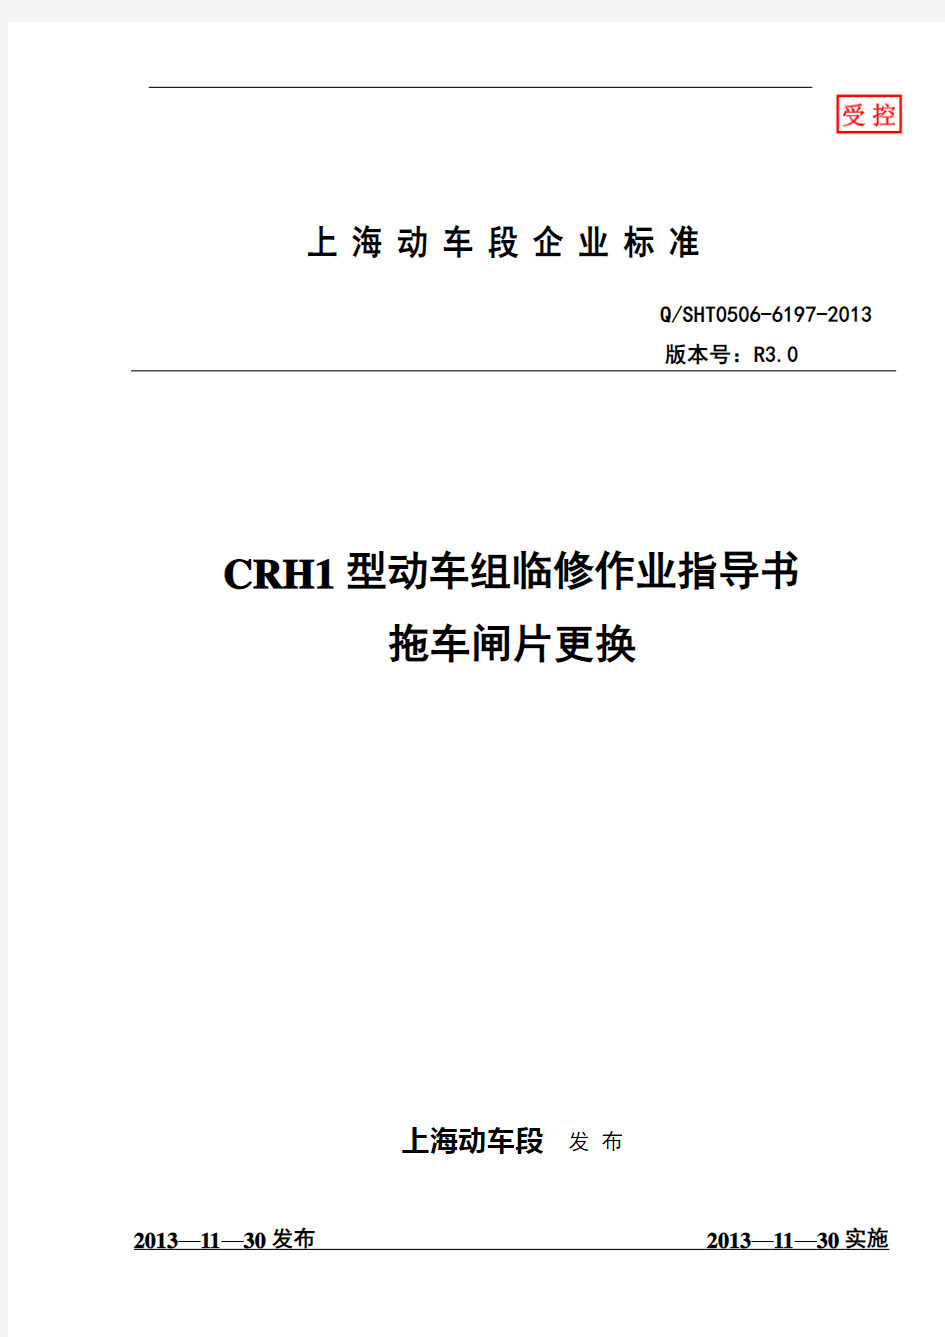 CRH1型动车组拖车闸片更换作业指导书